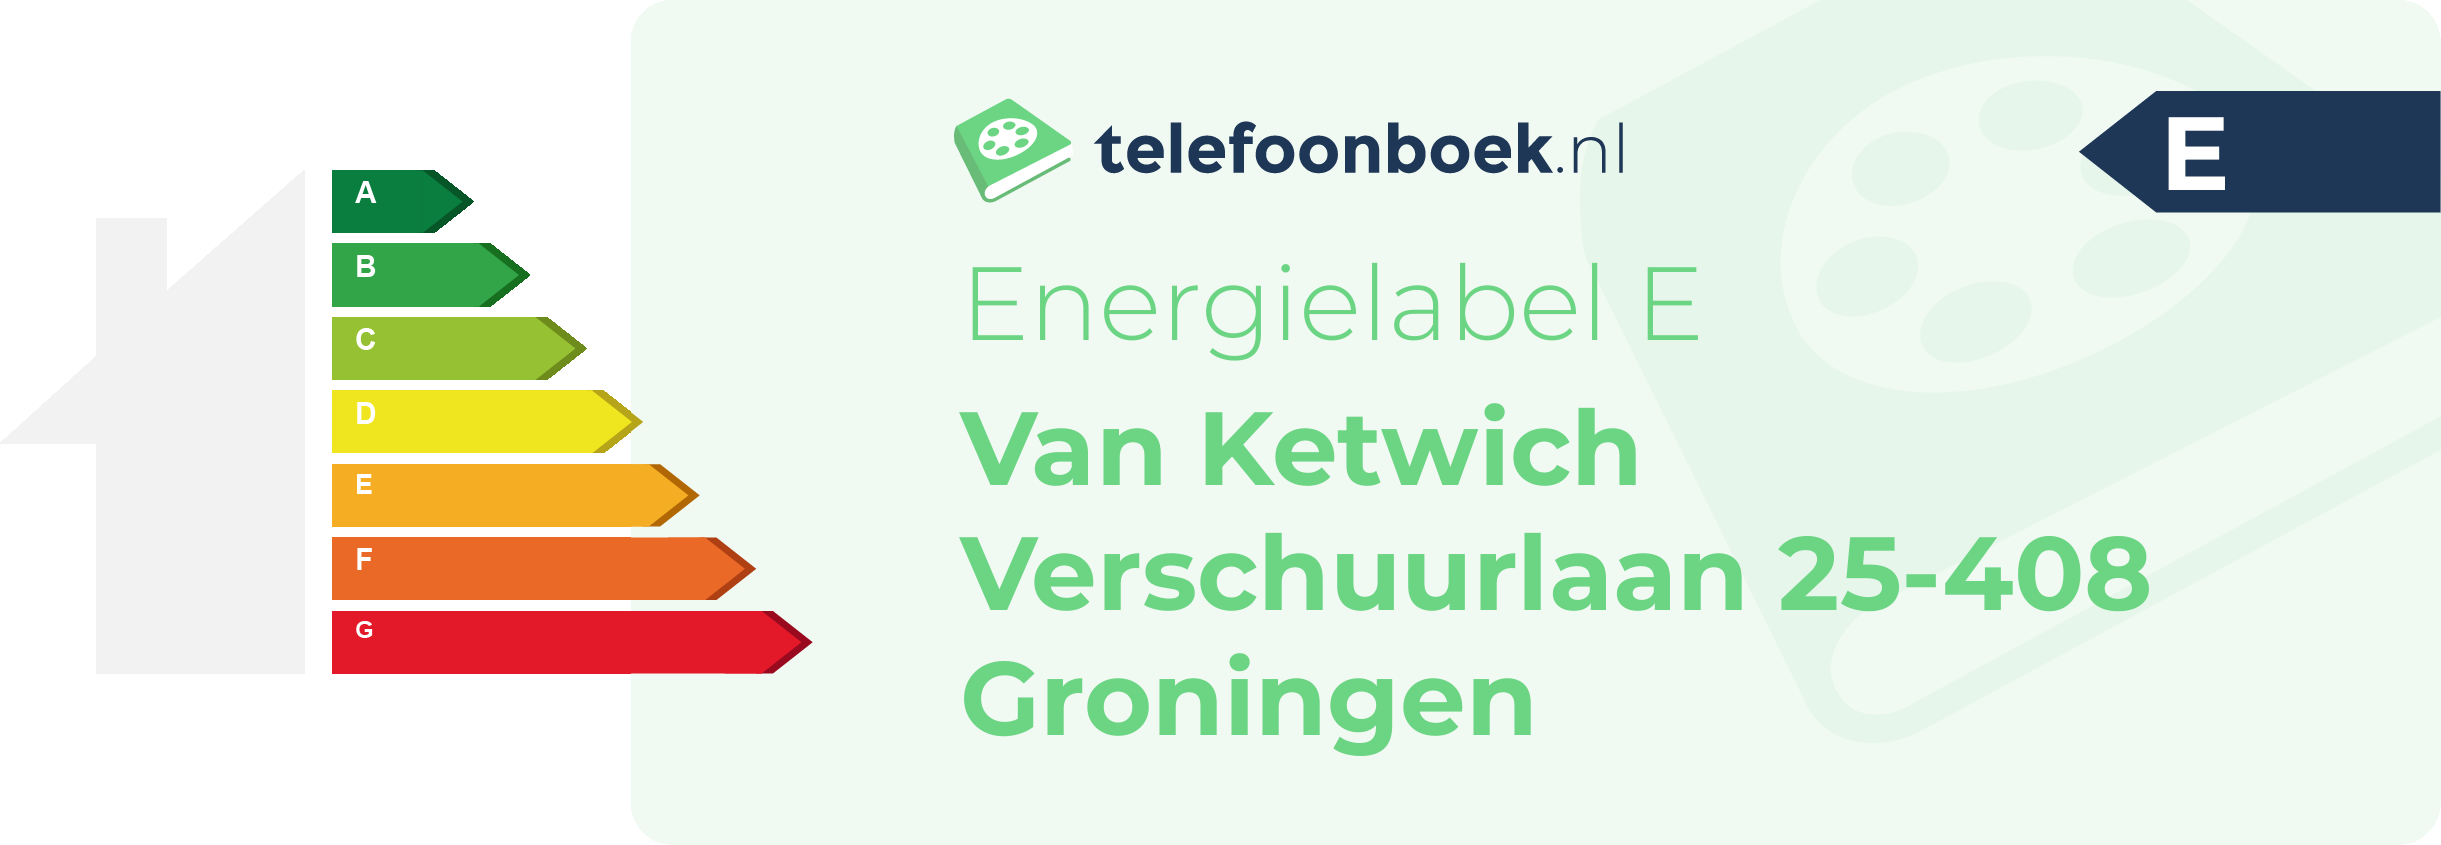 Energielabel Van Ketwich Verschuurlaan 25-408 Groningen